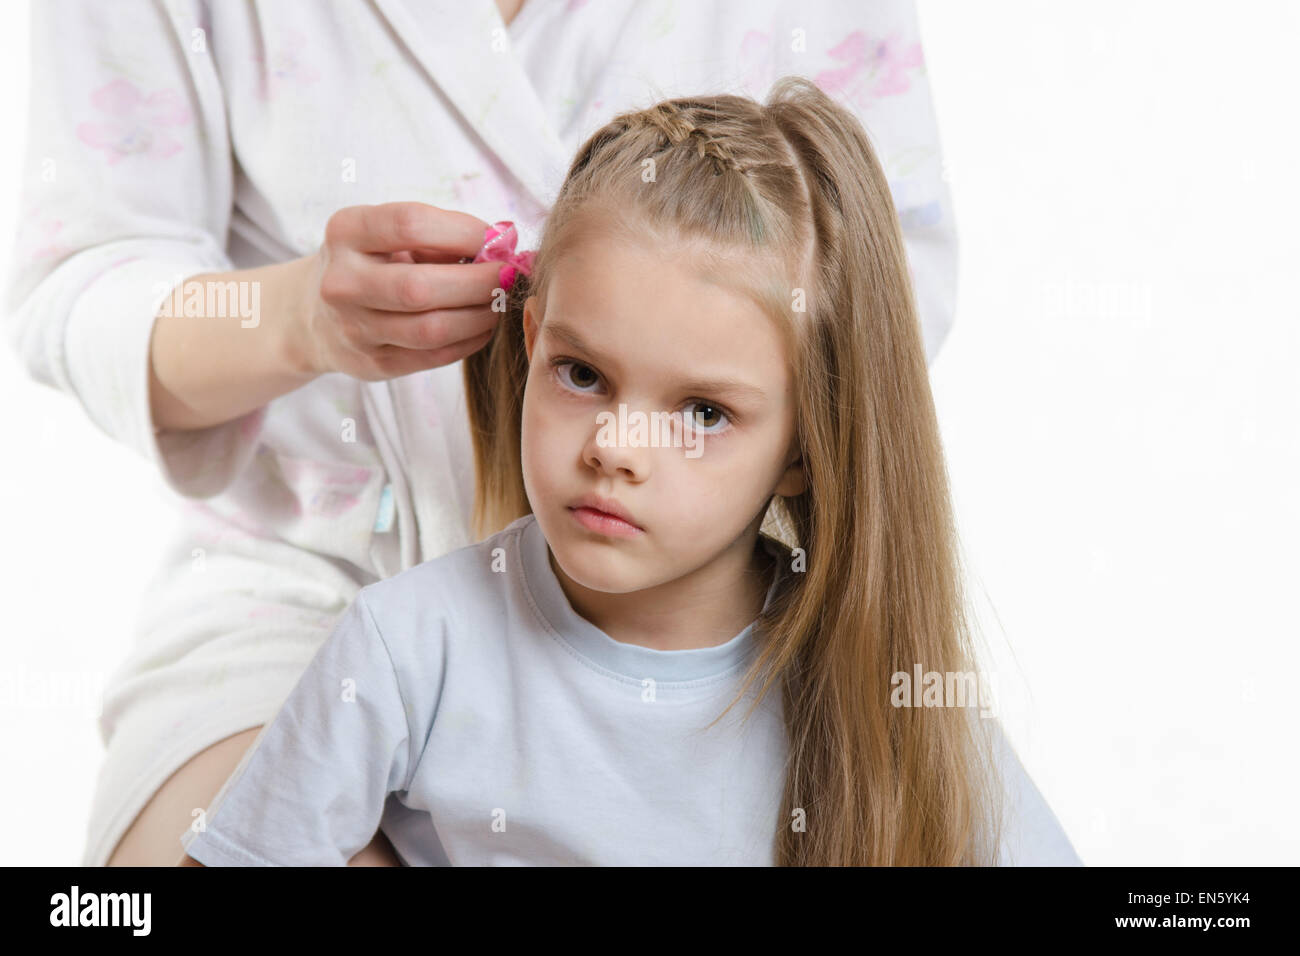 Tresses de cheveux longs élastiques maman jolie fille de six ans Banque D'Images